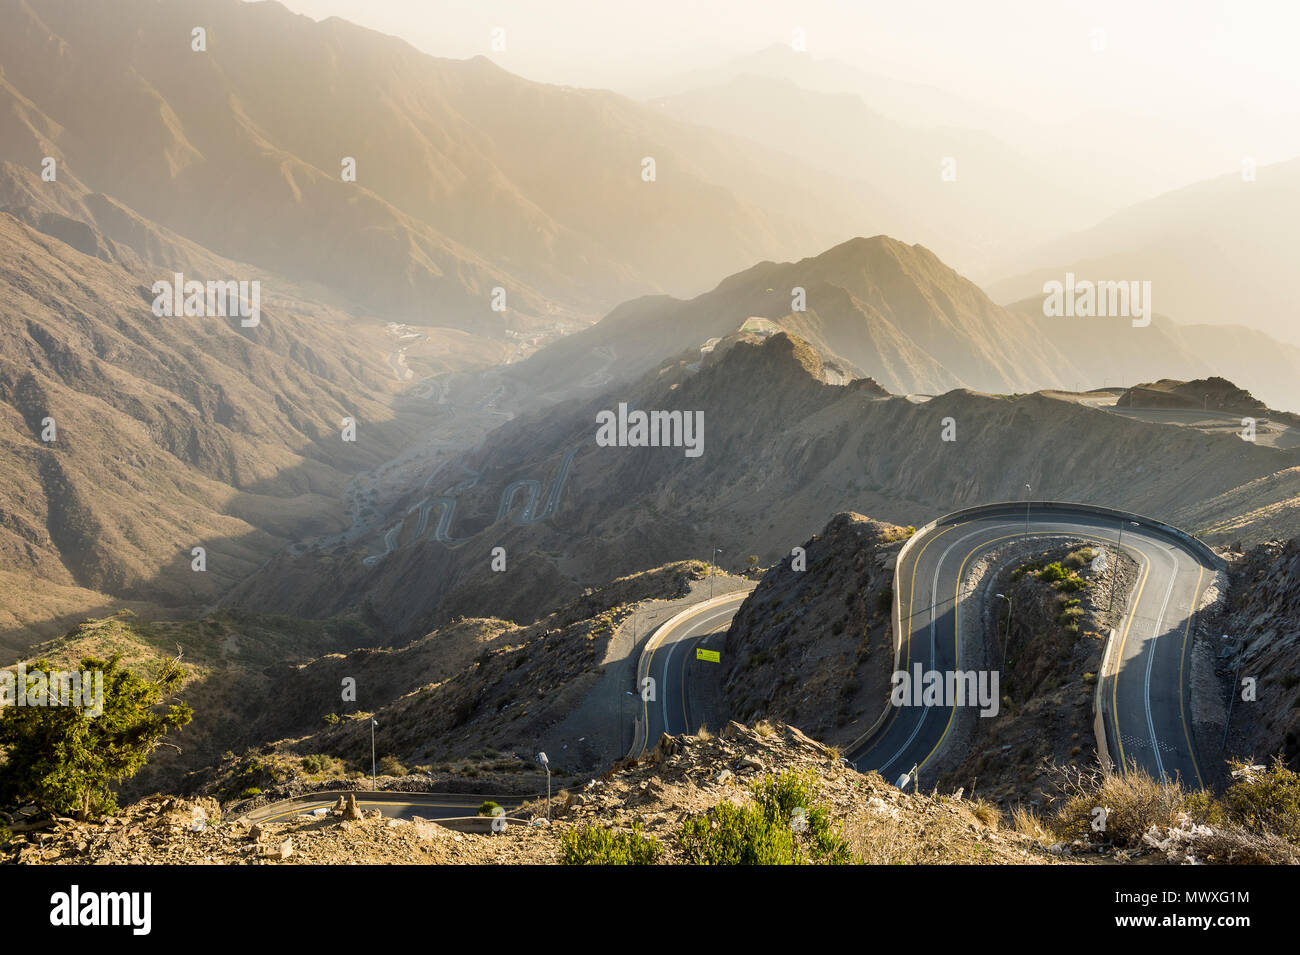 Magnifique paysage de montagnes autour de Mont Souda, plus haute montagne d'Arabie saoudite, Abha, Arabie saoudite, Moyen Orient Banque D'Images